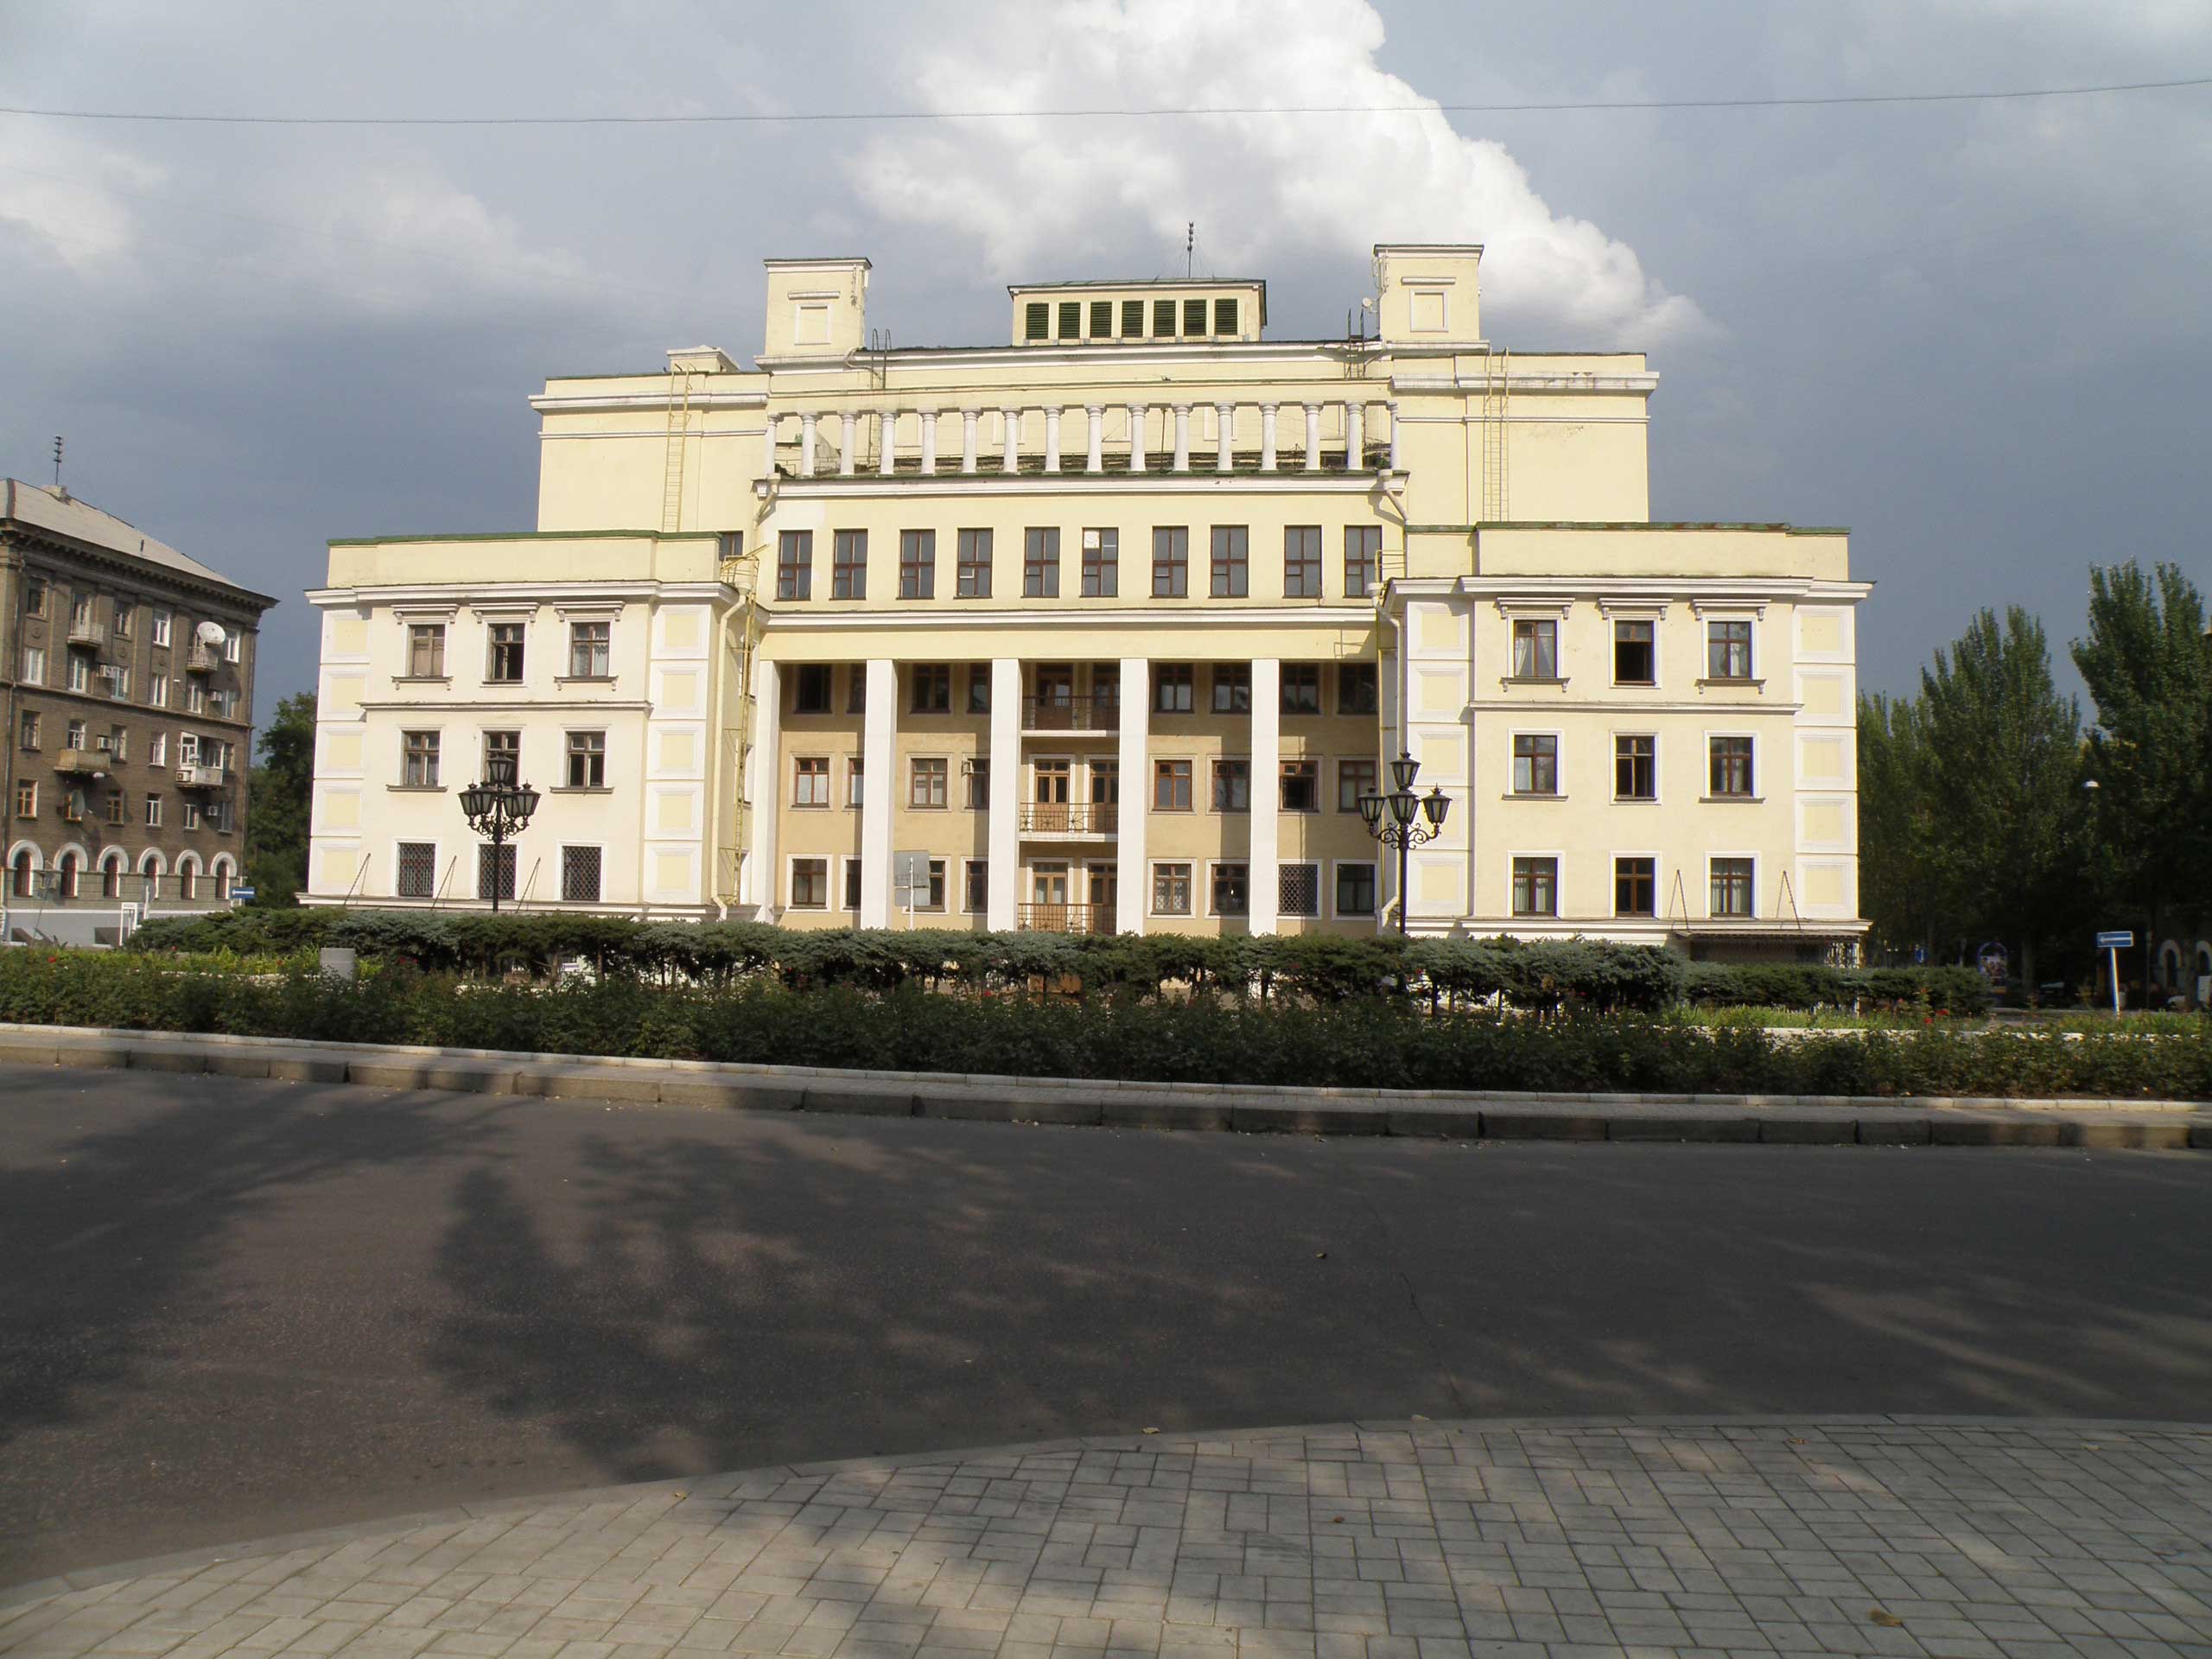 Донецьк і війна: історія архітектури, Юзівка, десталінізація й окупація